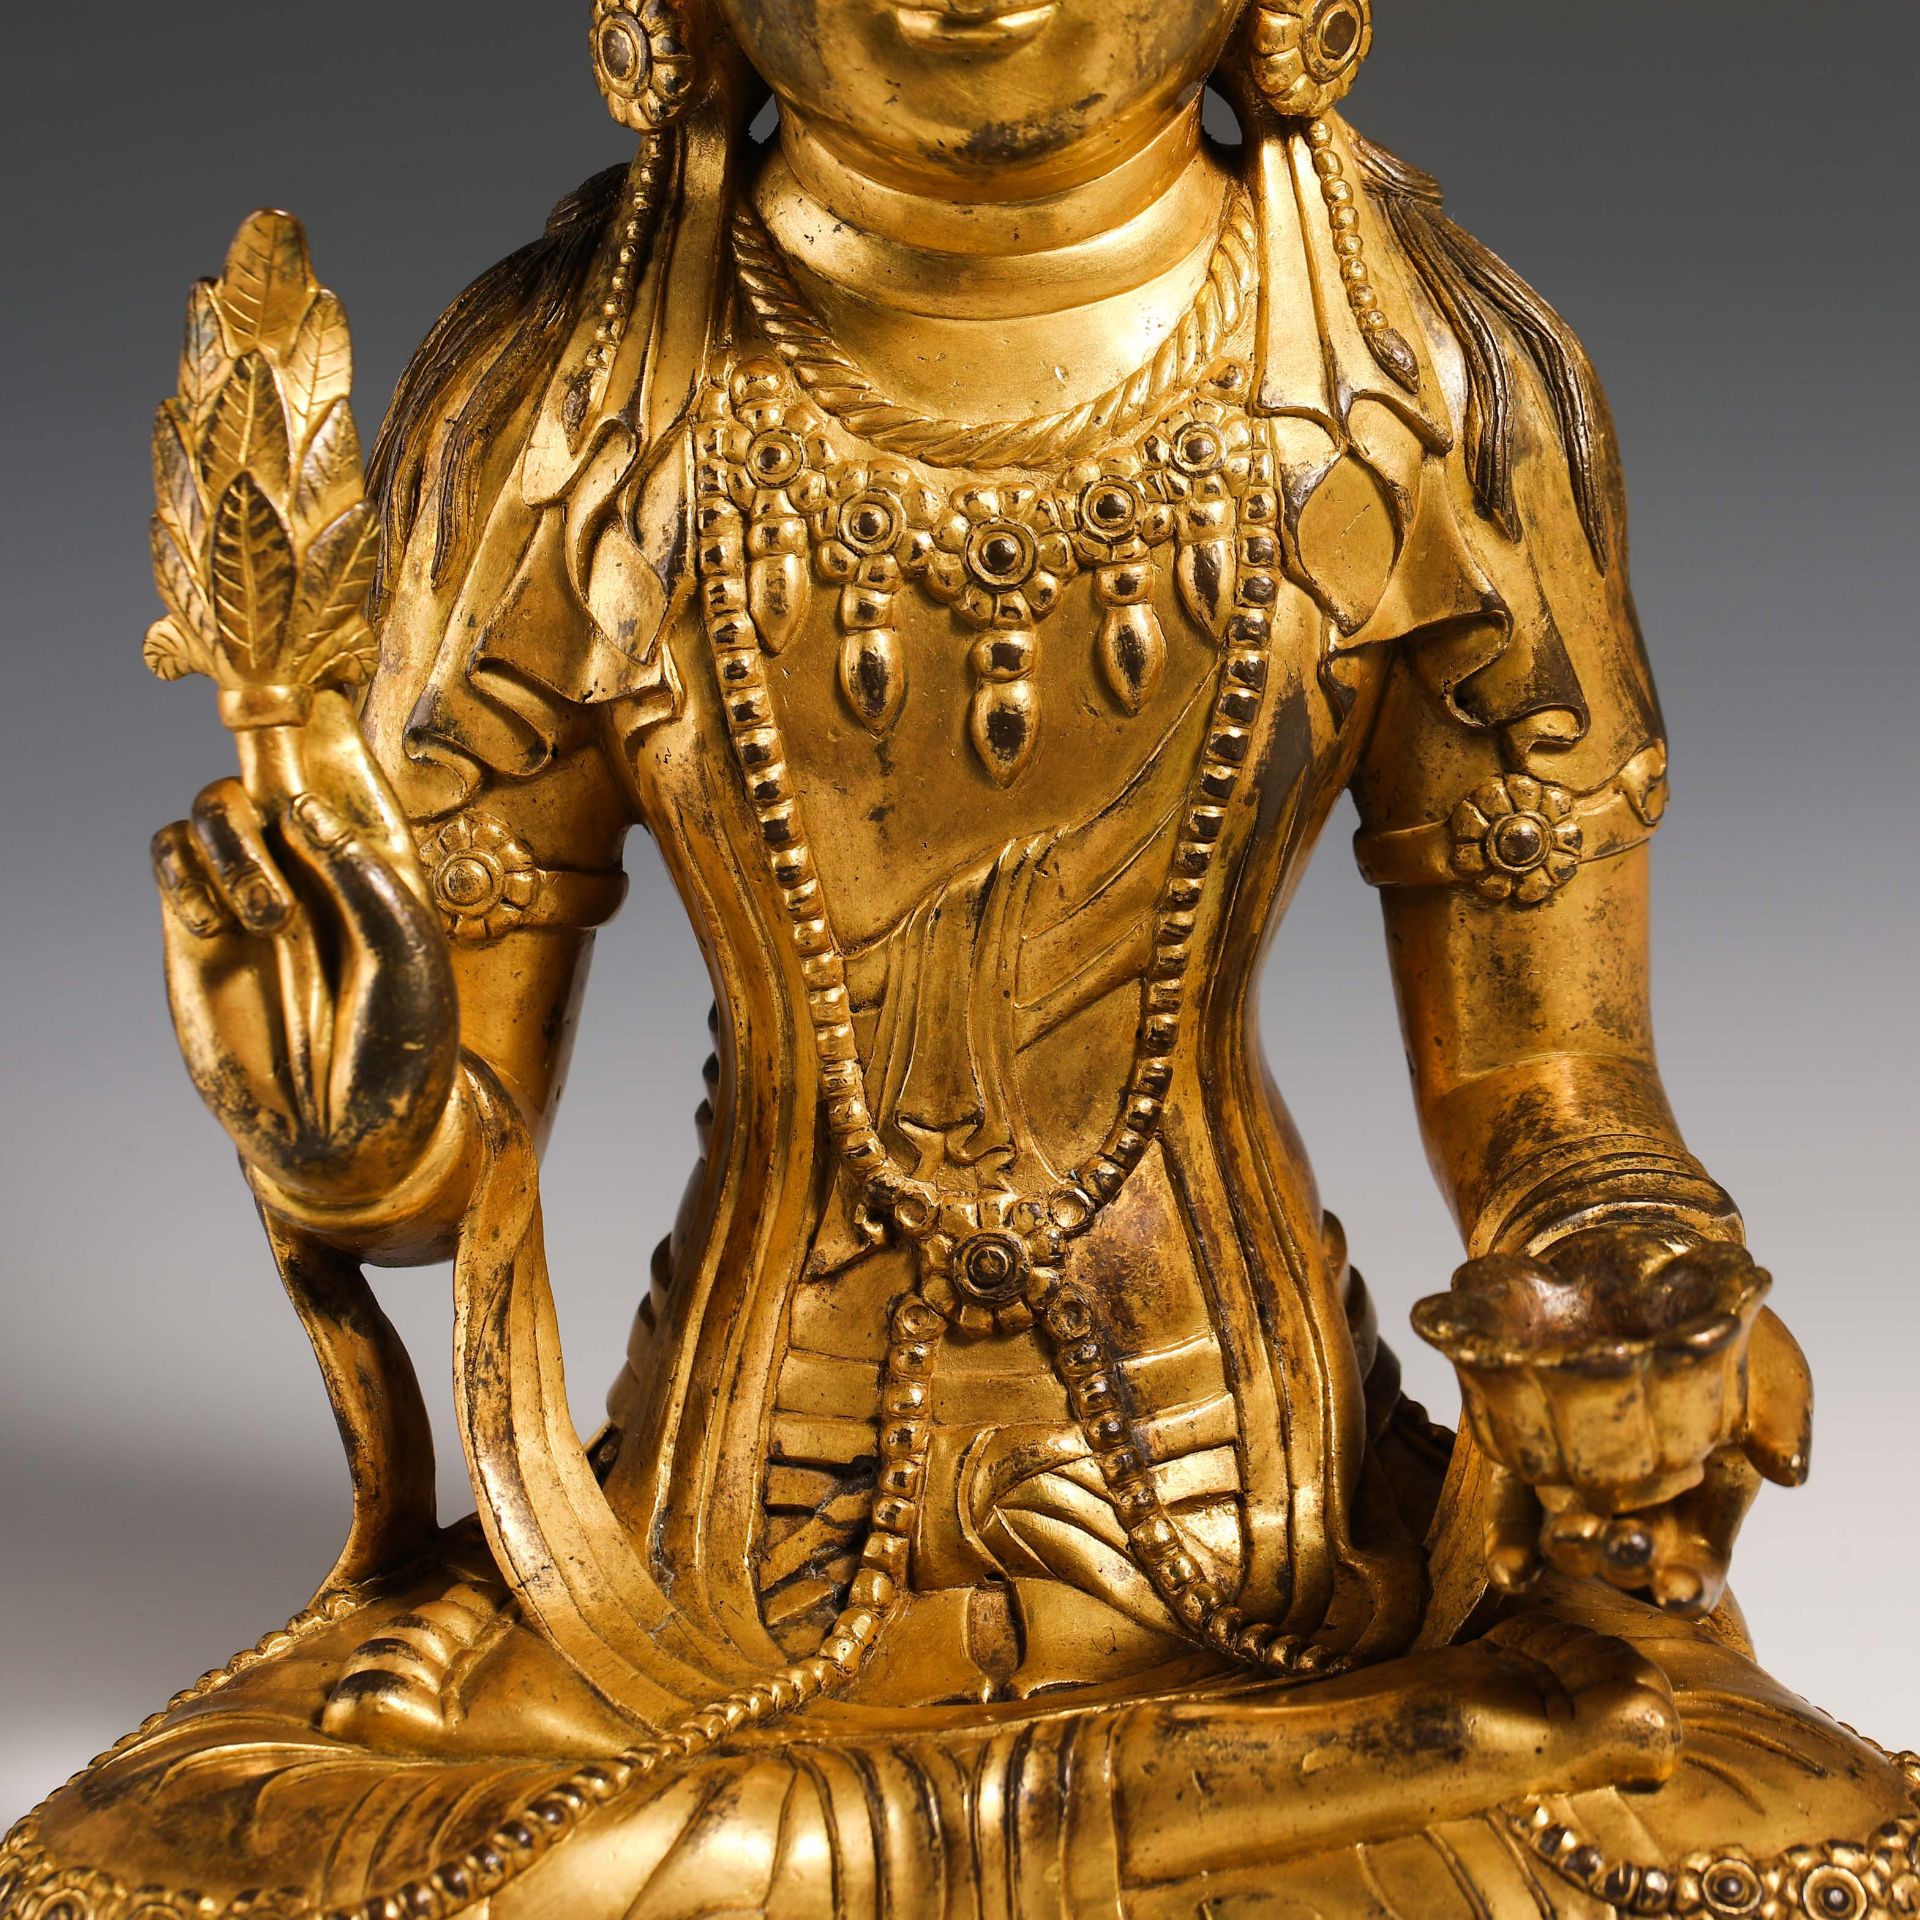 10th Century Guanyin Buddha - Image 7 of 16